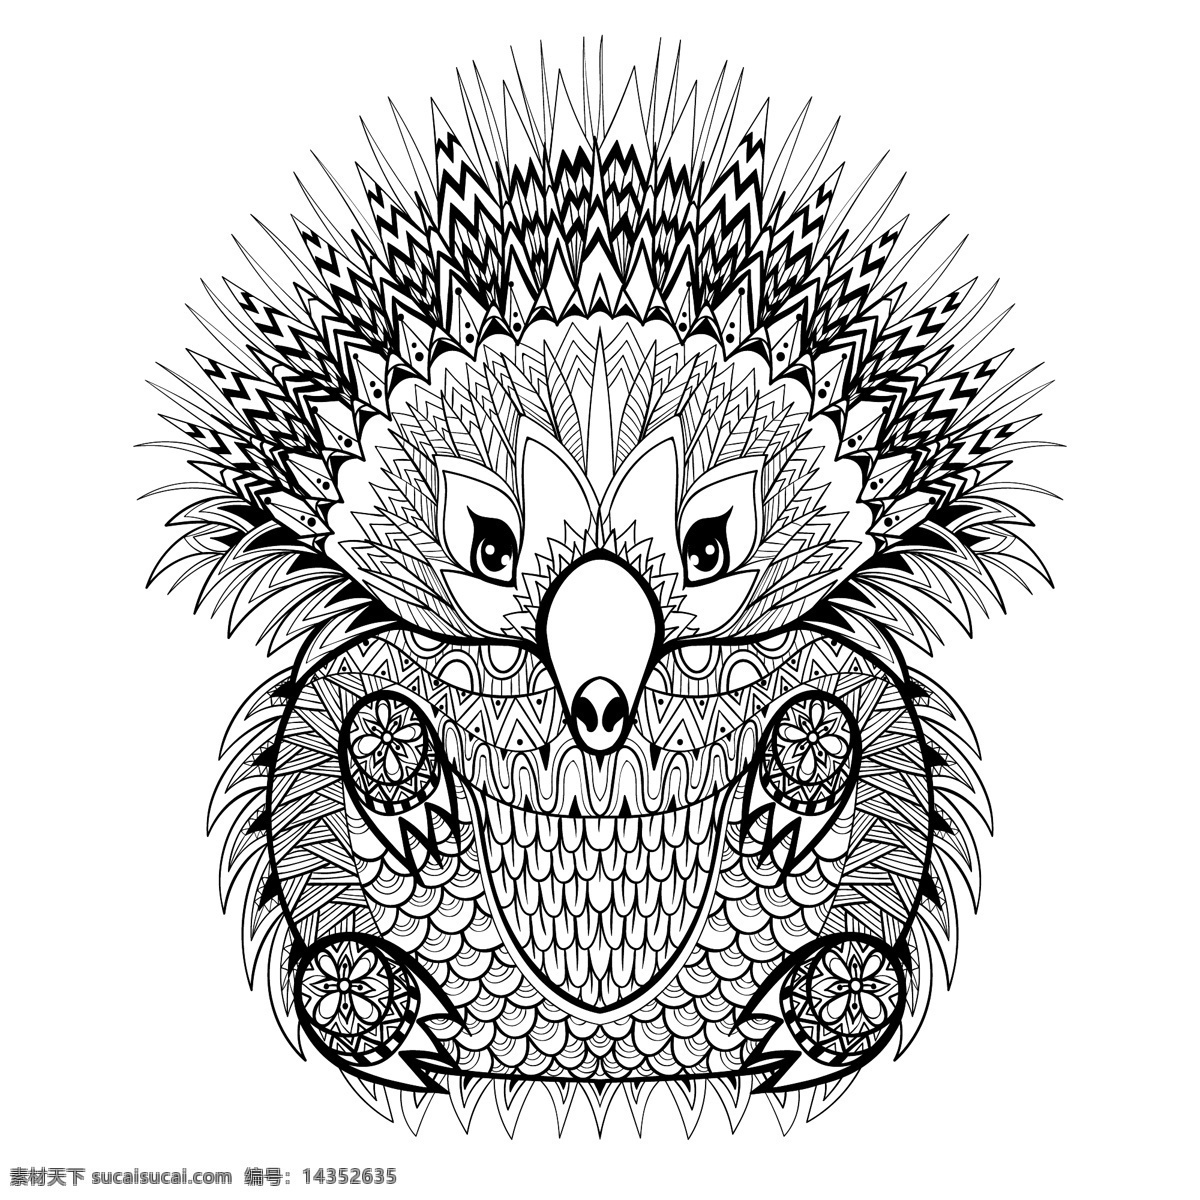 插画 刺猬 动物 卡通 时尚 手绘 艺术 花纹